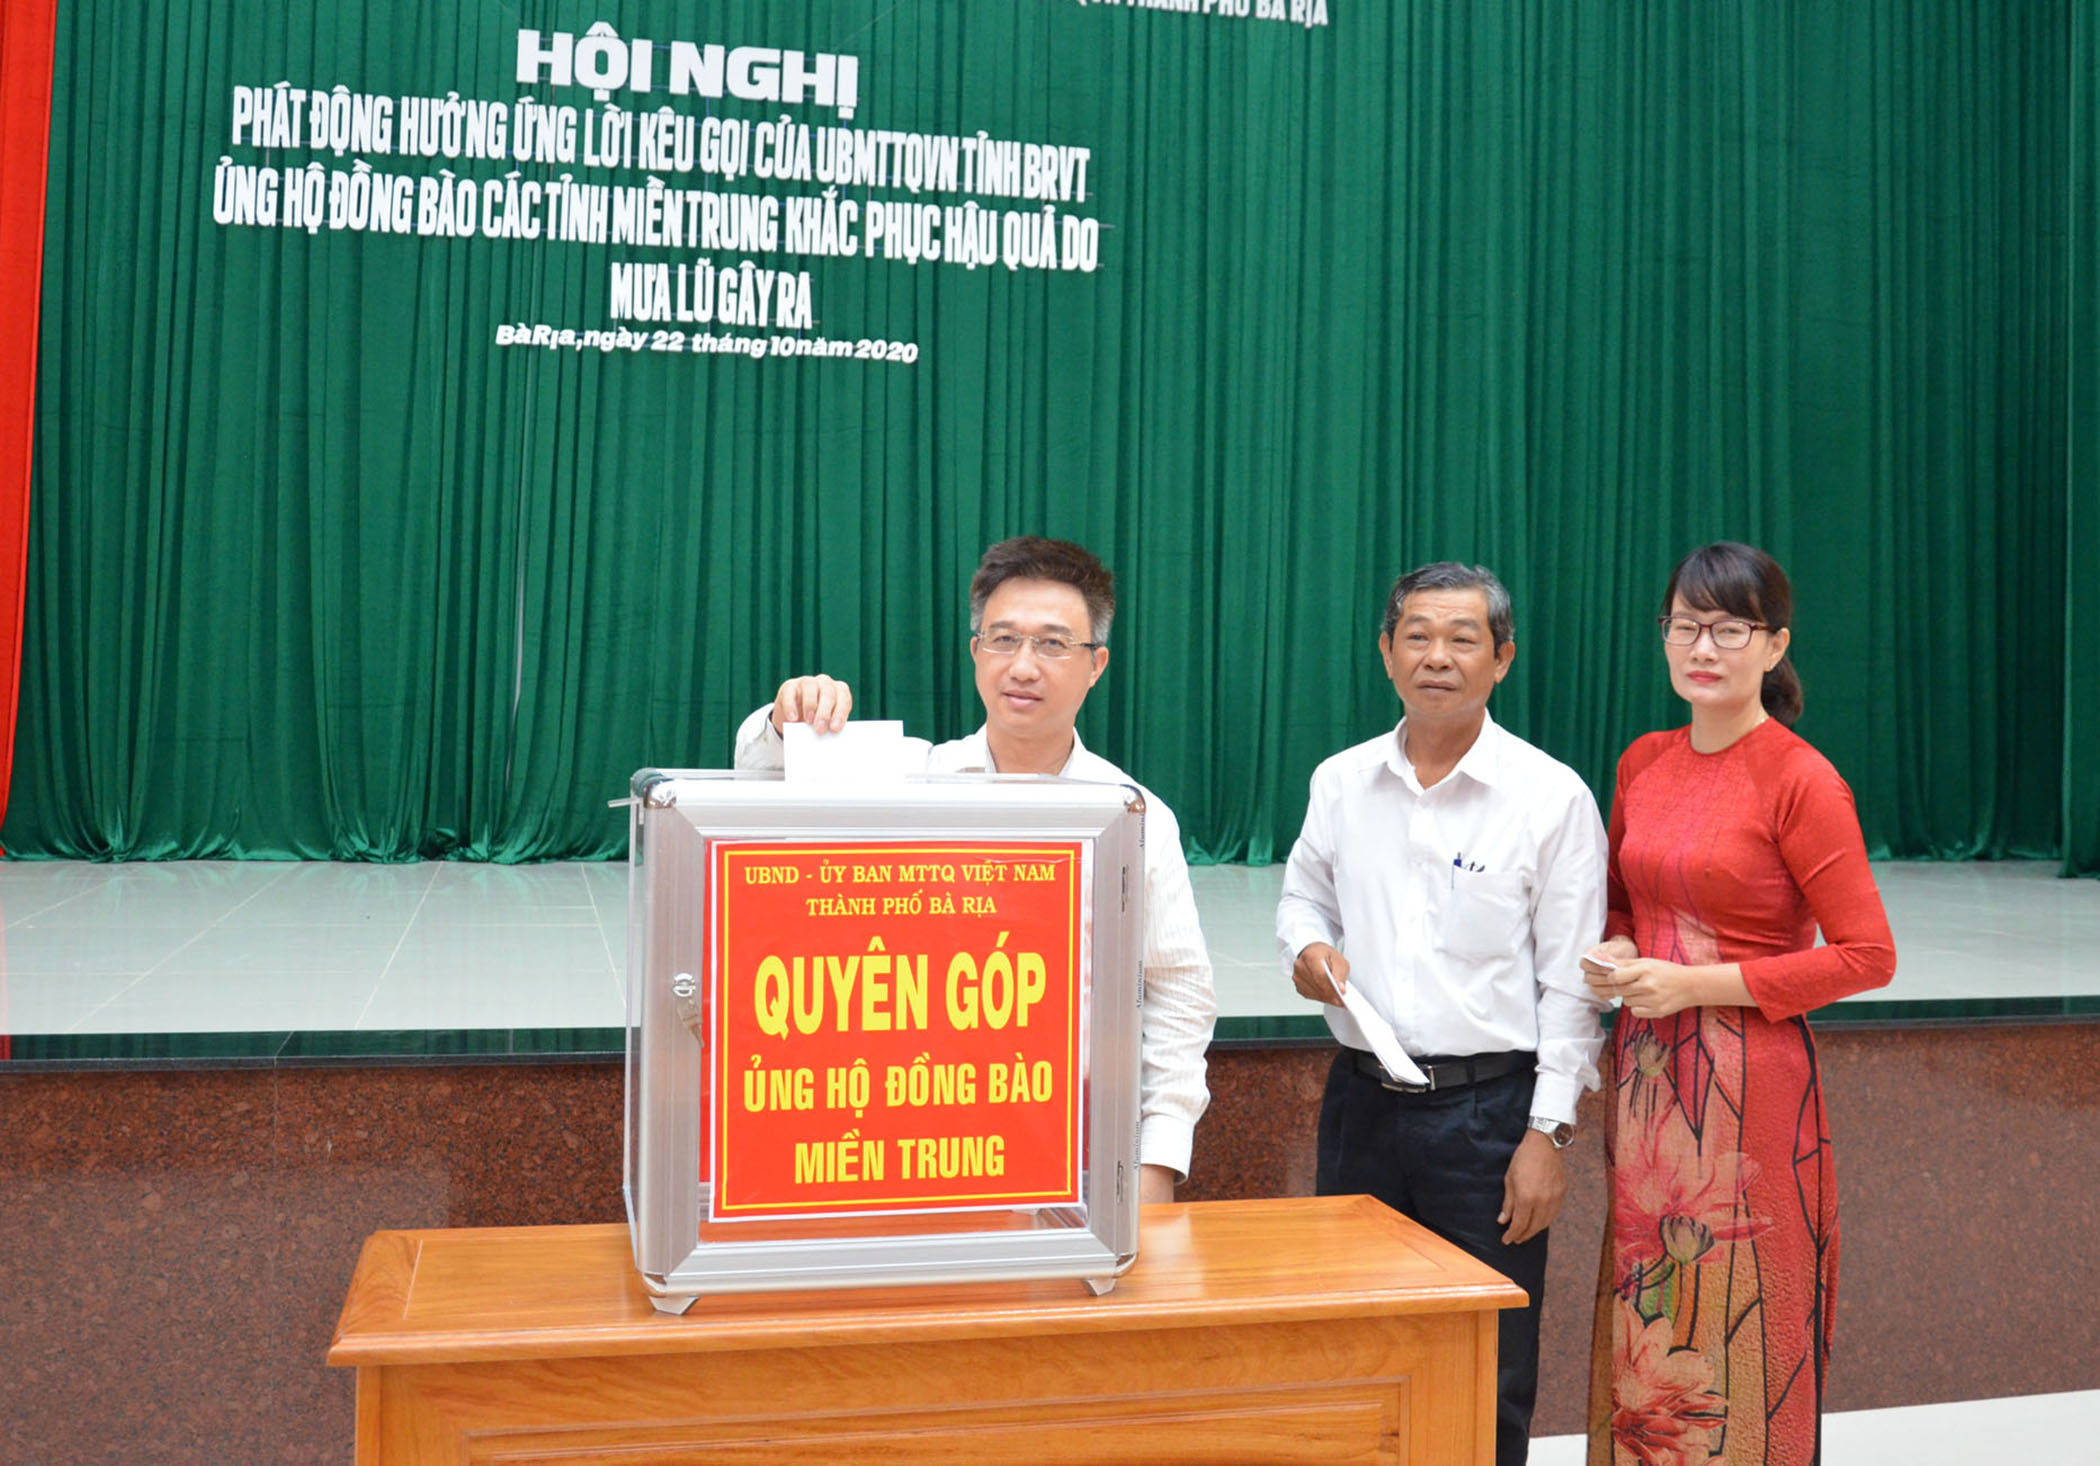 Ông Đặng Minh Thông, Ủy viên Ban Thường vụ Tỉnh ủy, Bí thư Thành ủy Bà Rịa và các đại biểu ủng hộ đồng bào miền Trung.